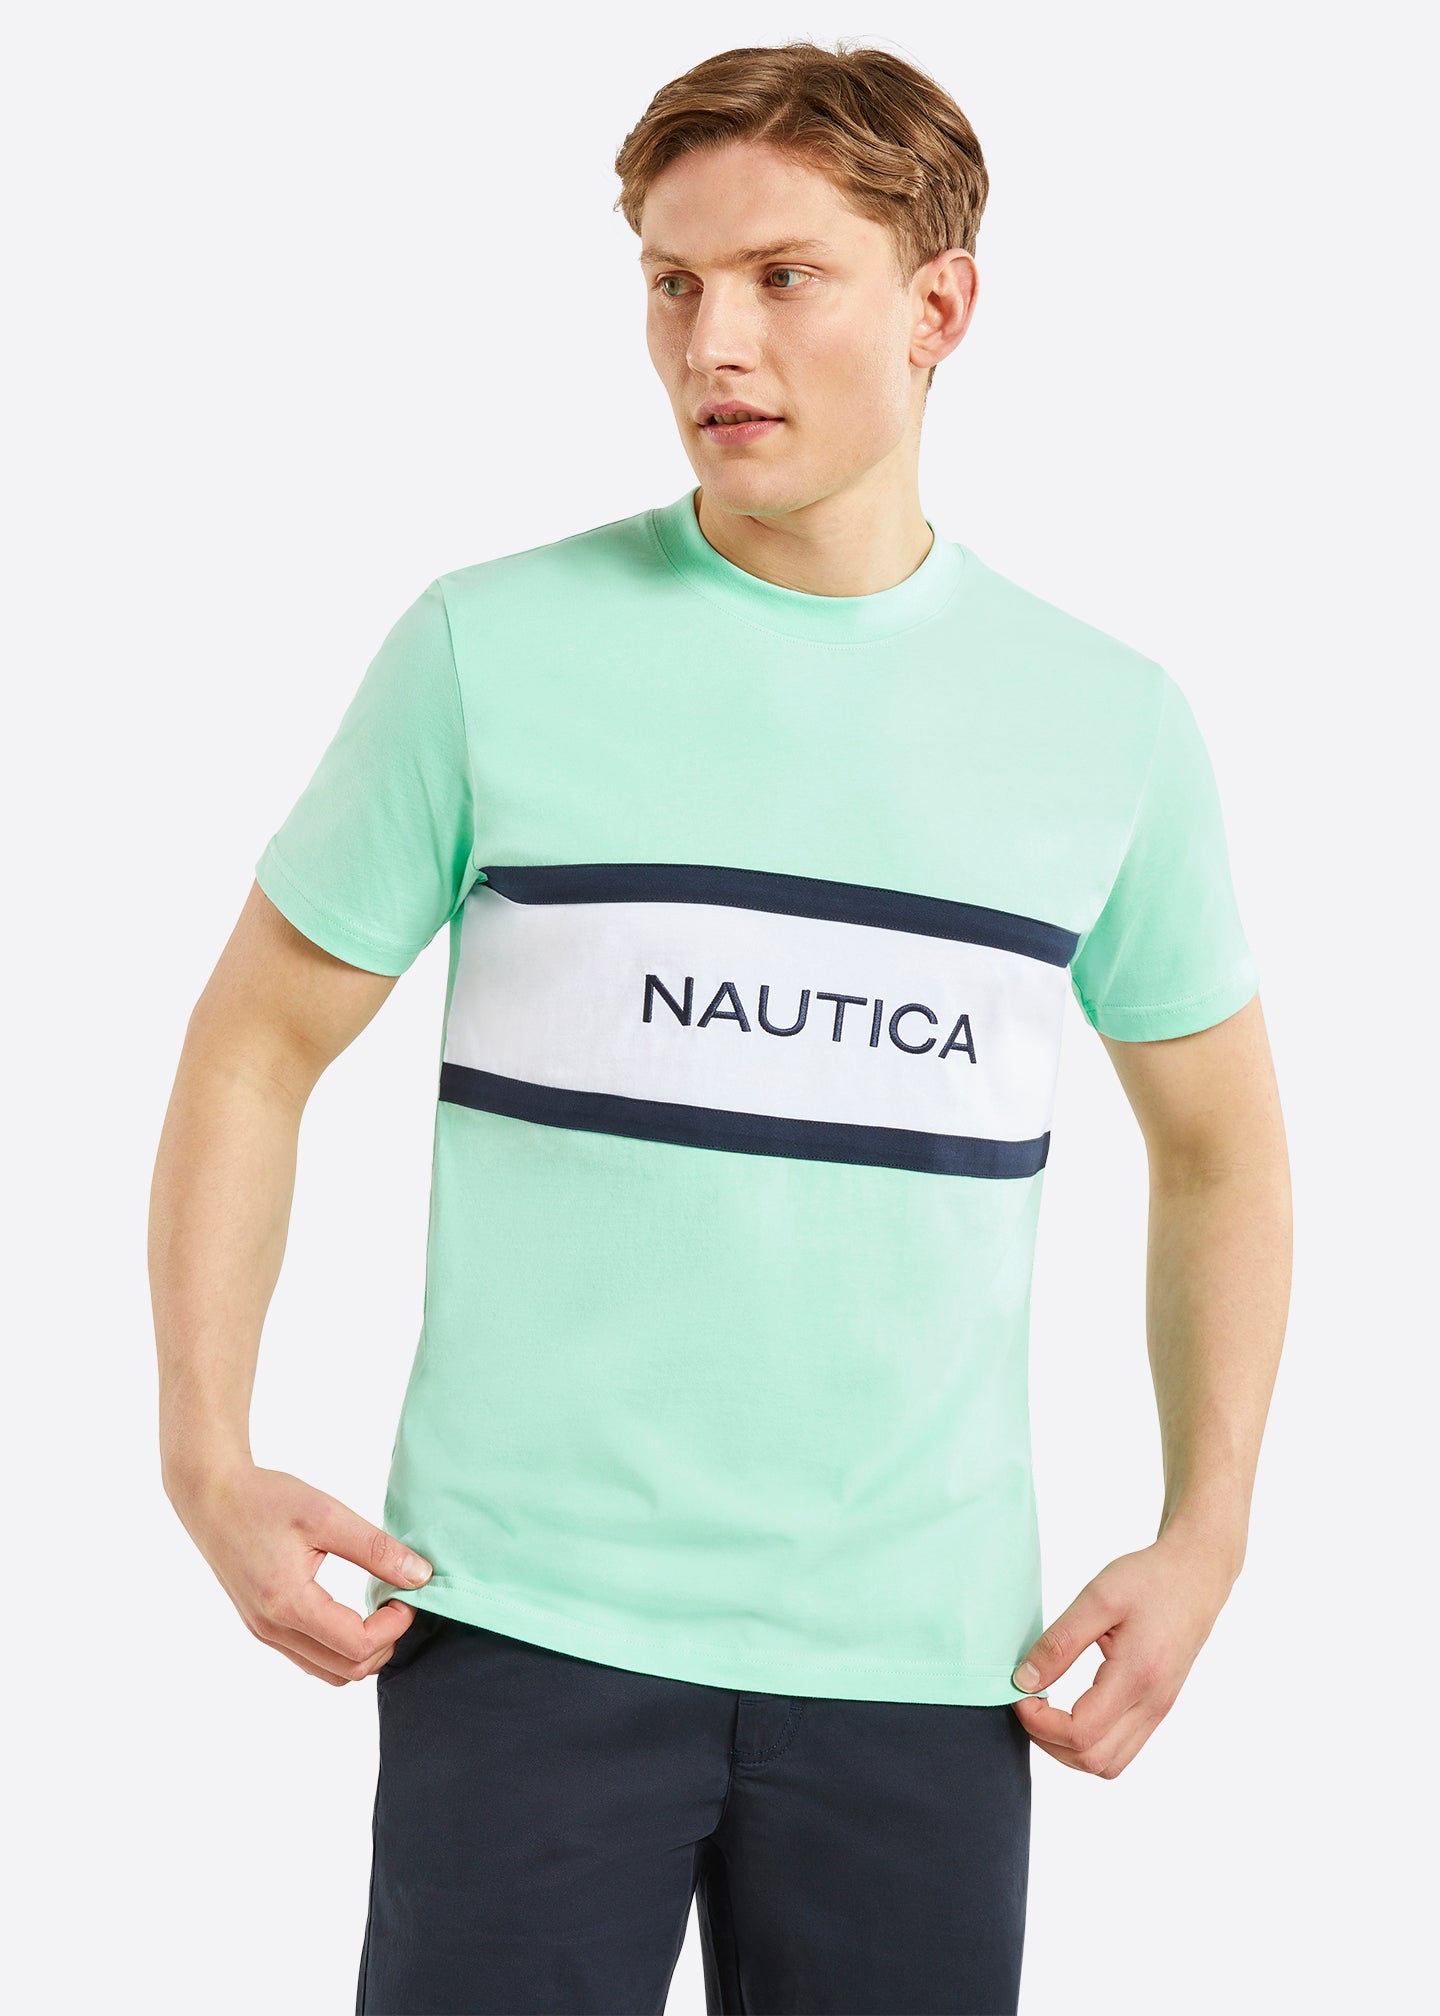 Nautica Henfield T-Shirt - Mint - Front